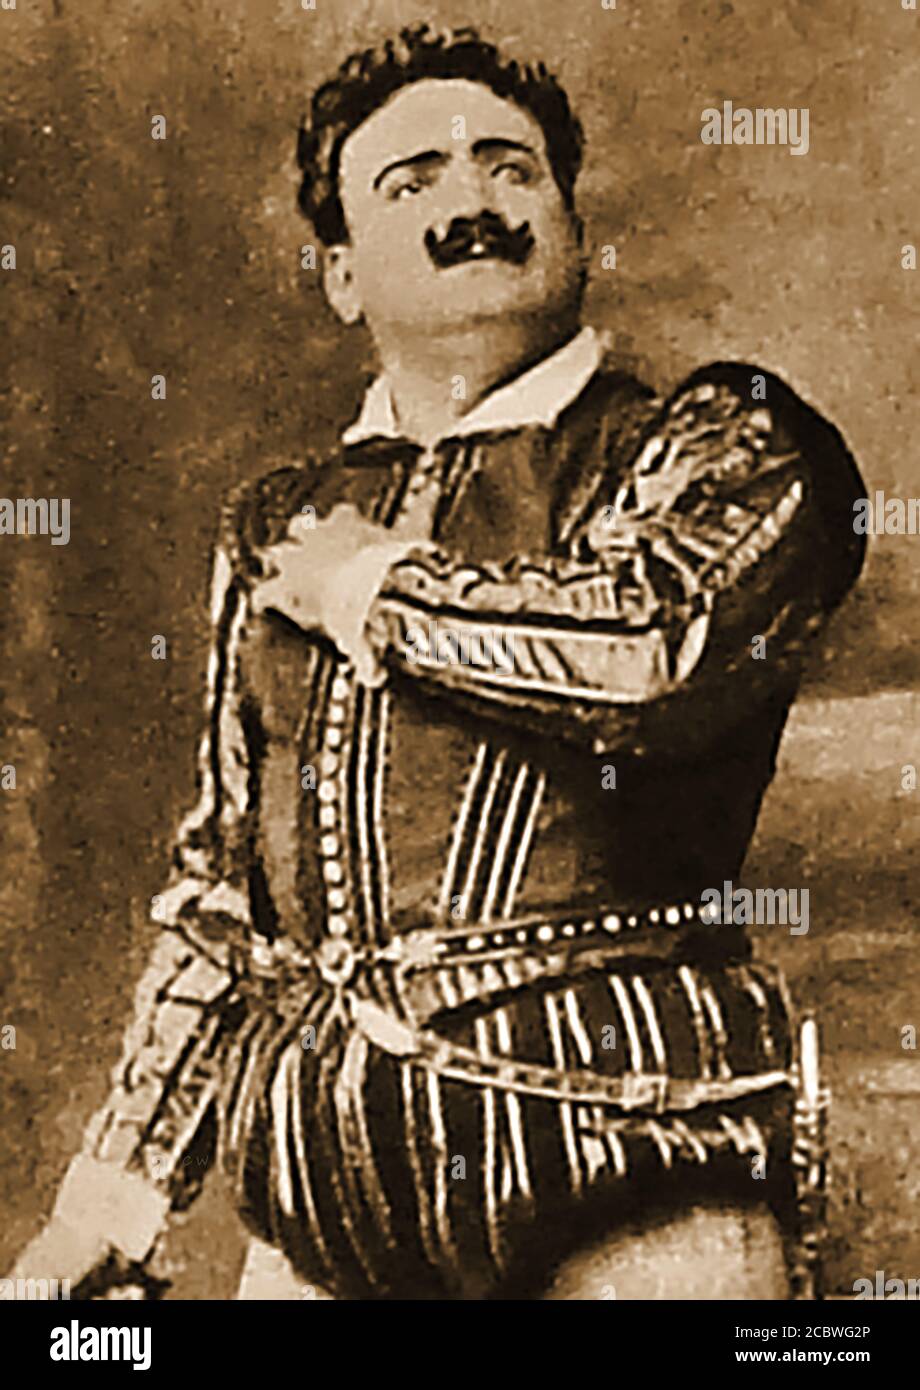 Enrico Caruso (1873-1921) vestido con traje de época. Caruso fue un tenor operático italiano de fama internacional que actuó en las principales operadoras de Europa y América con sus repertorios italianos y franceses. Fue uno de los primeros cantantes de su tiempo en ser grabado comercialmente. También fue un consumado artista de bocetos y un ávido coleccionista de sellos, monedas, relojes y antiguos snuffboxes, así como un compilador de libros de chatarra. Foto de stock